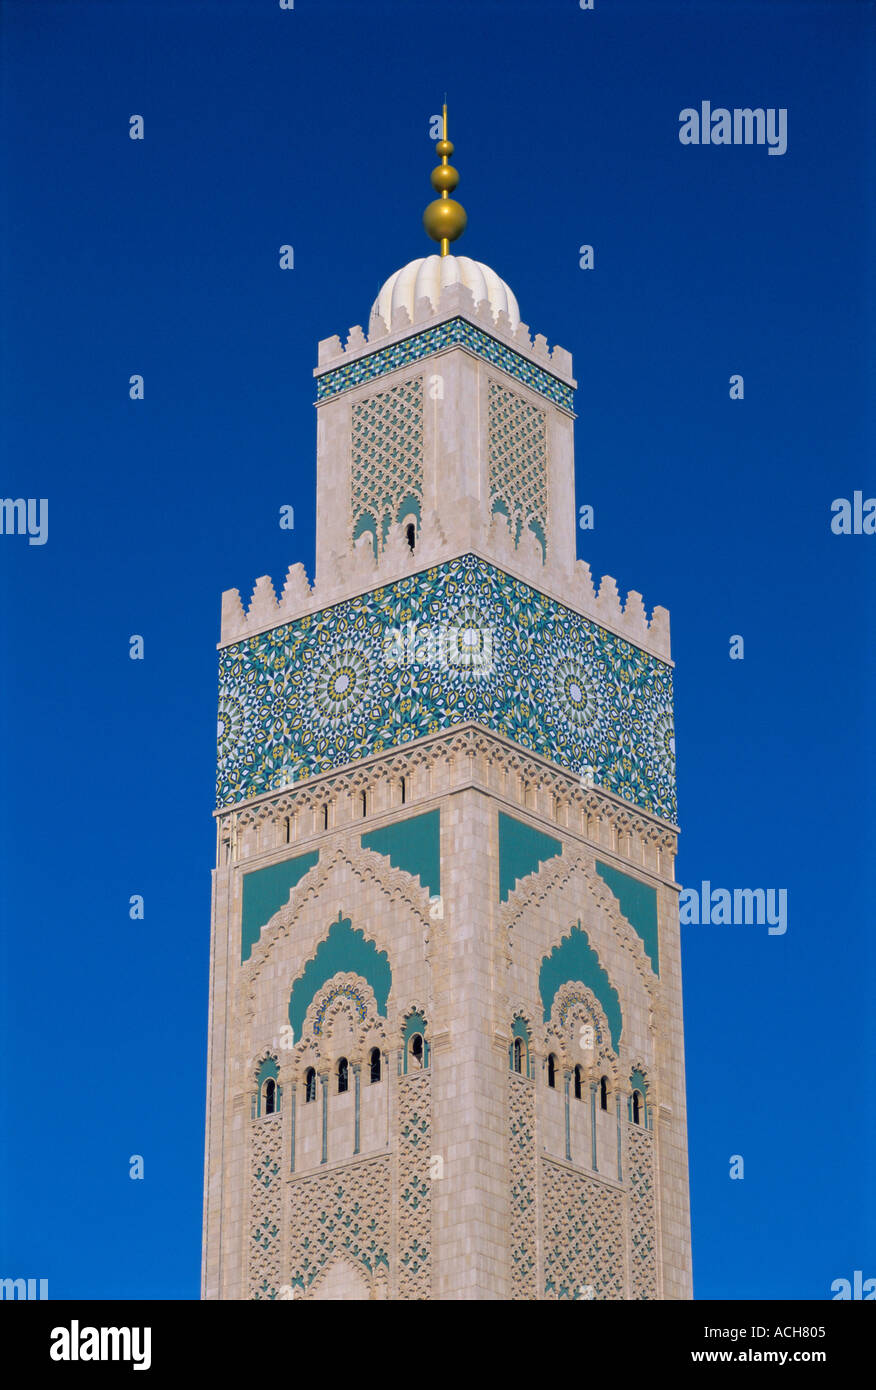 Minaret de la Mosquée Hassan II Casablanca Maroc Afrique du Nord Afrique Banque D'Images